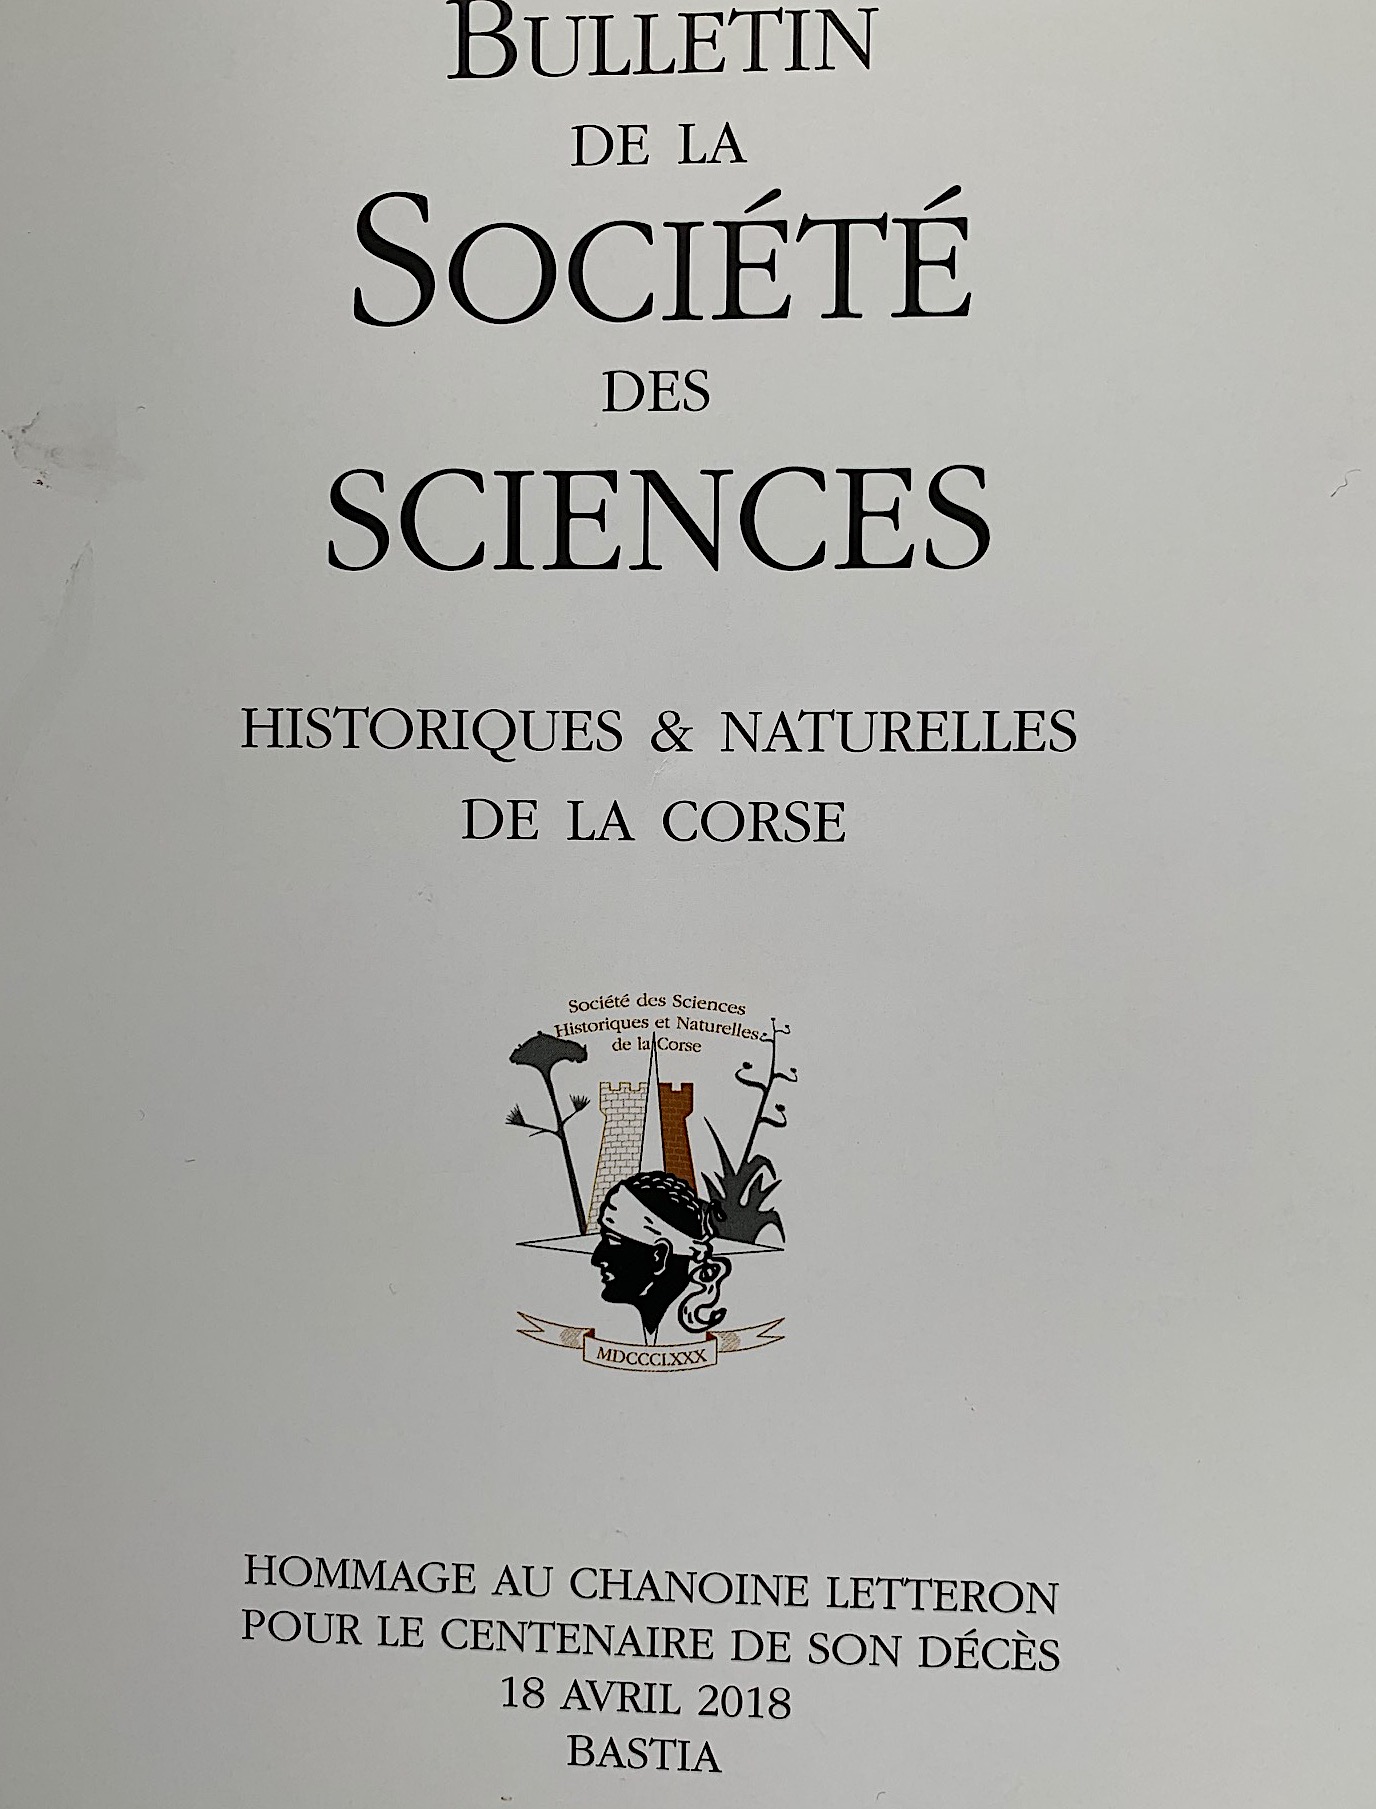 Bulletin de la Société des Sciences historiques et naturelles de la Corse : Hommage au chanoine Letteron